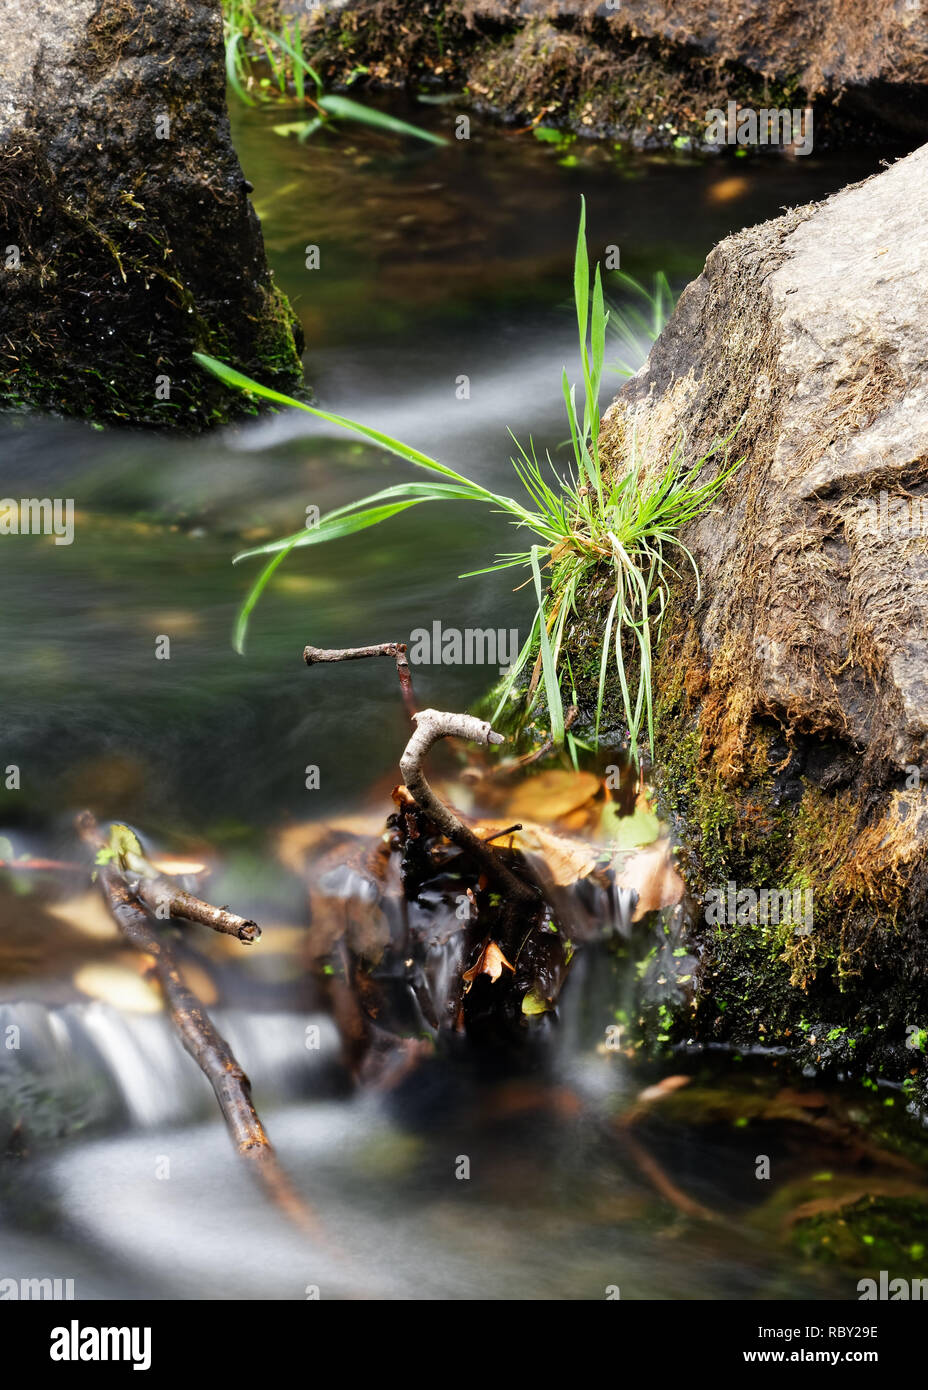 Detailansicht des fließenden Wasser eines kleinen Flusses, das Wasser fließt, einen großen Stein, teilweise mit Moos und Gras bewachsen, Büschel Gras auf der Ston Stockfoto